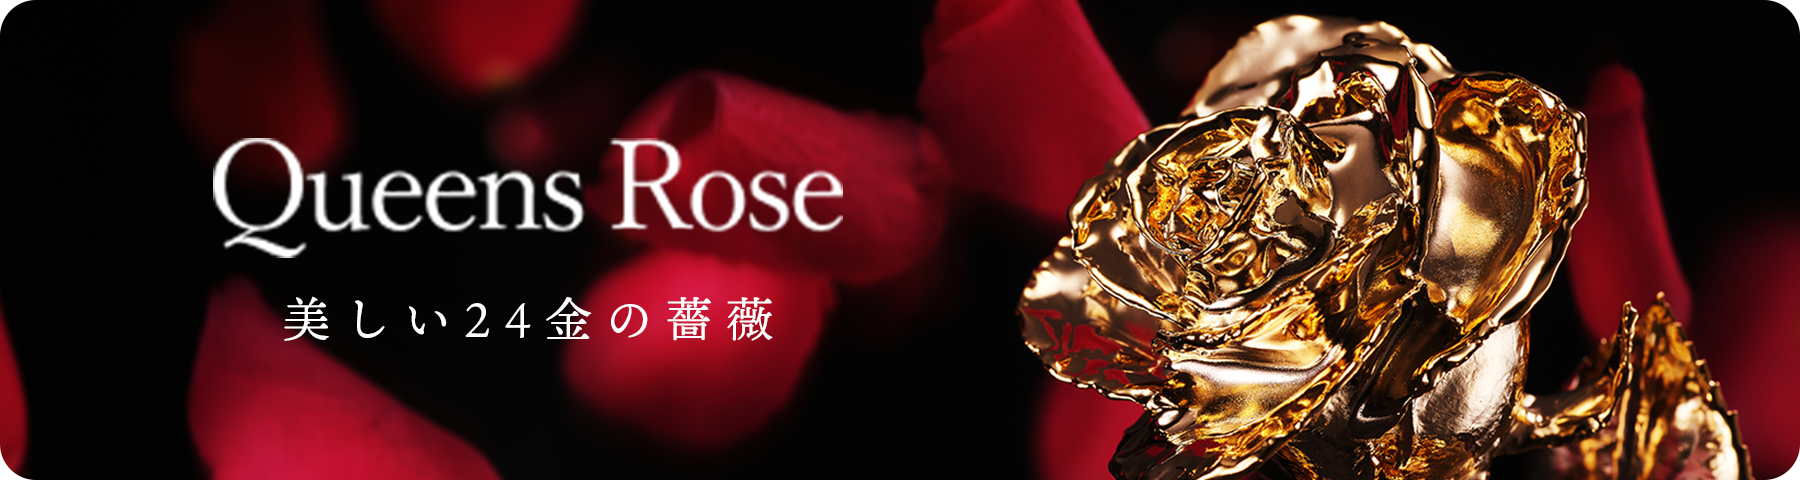 Queens Rose 美しい24金の薔薇